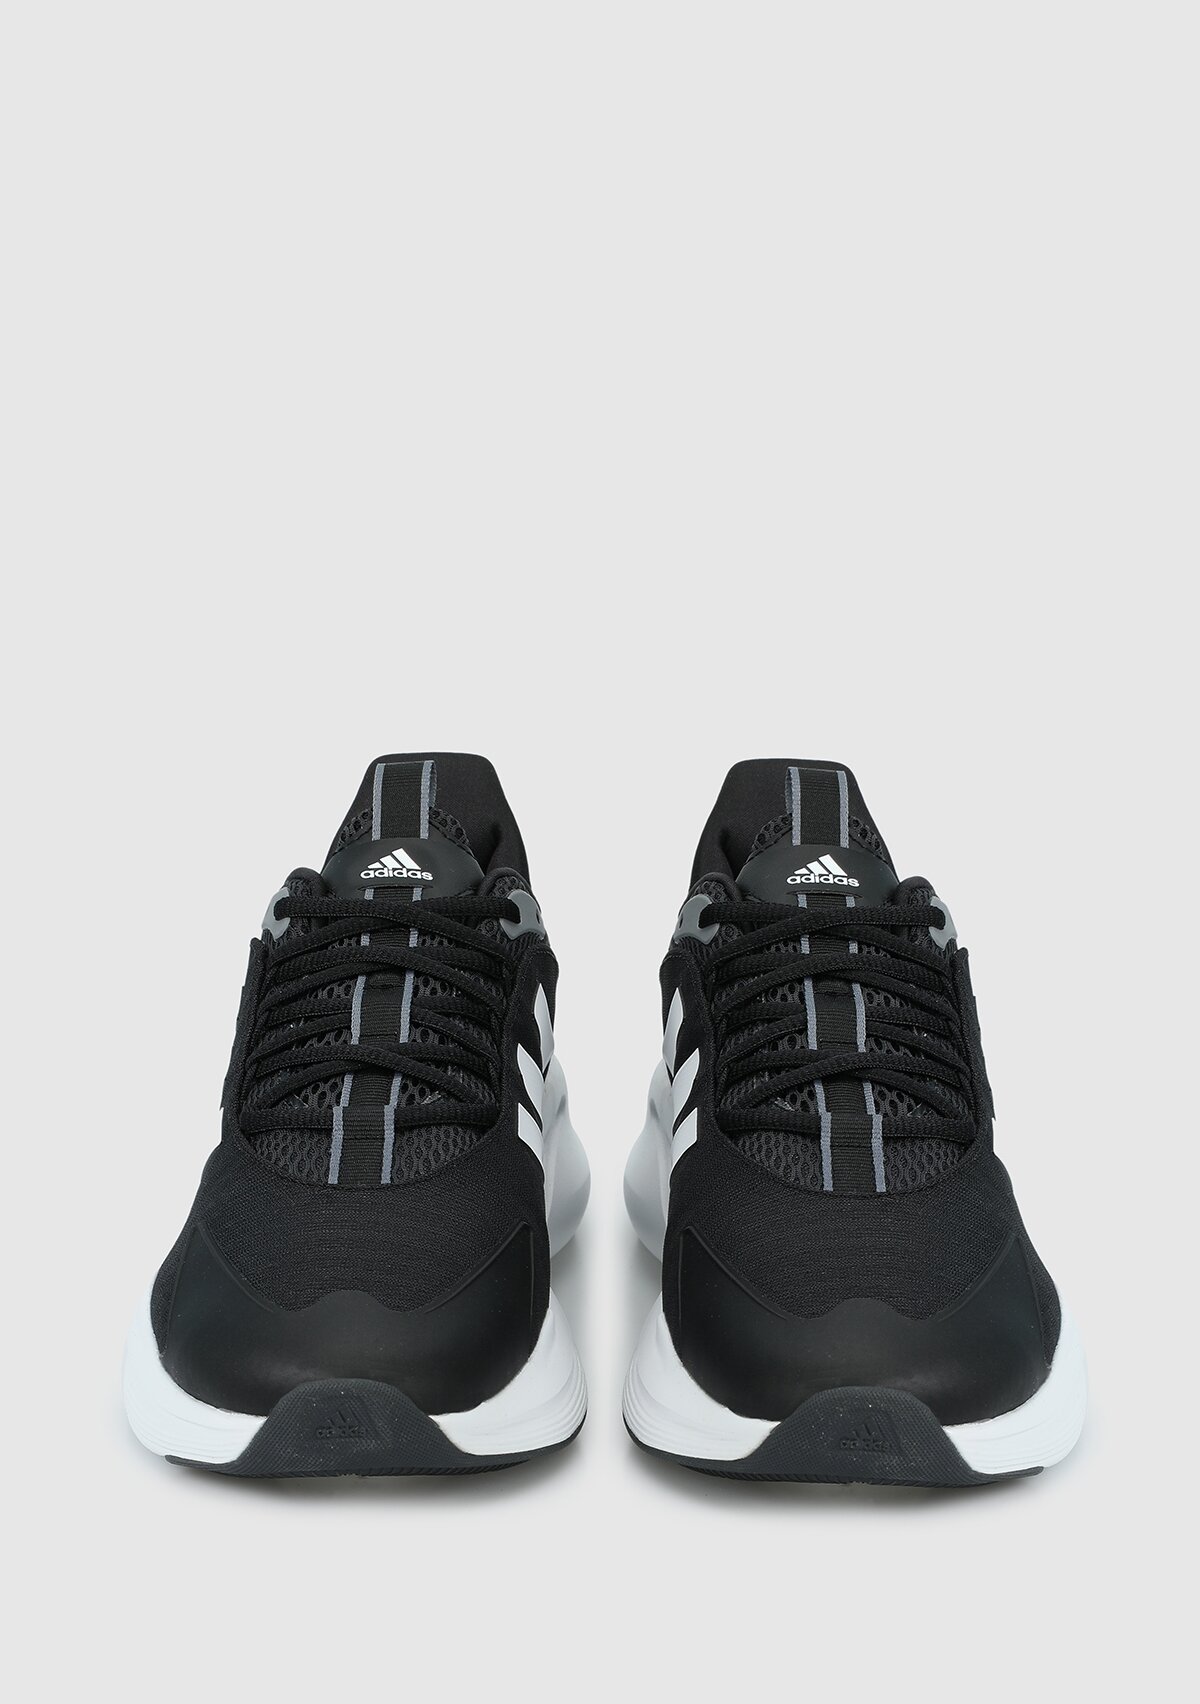 adidas Alphaedge +Siyah erkek koşu Ayakkabısı ıf7292